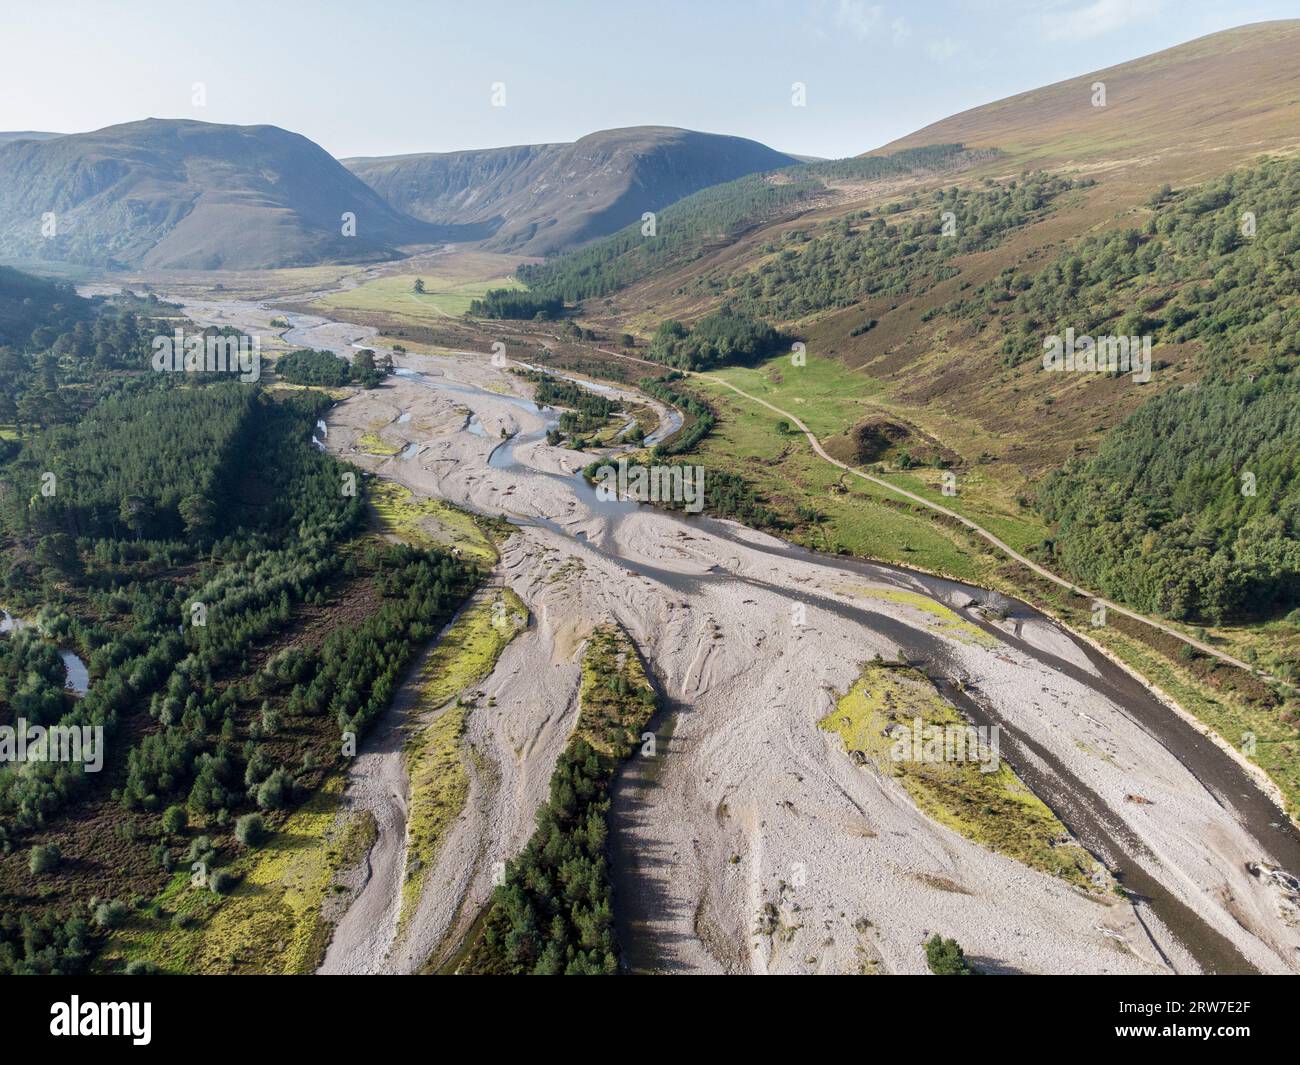 Natürliche und unmanipulierte Hochwasserebene auf dem Fluss feshie, glenfeshie, Cairngorm Nationalpark Schottland Vereinigtes Königreich Stockfoto